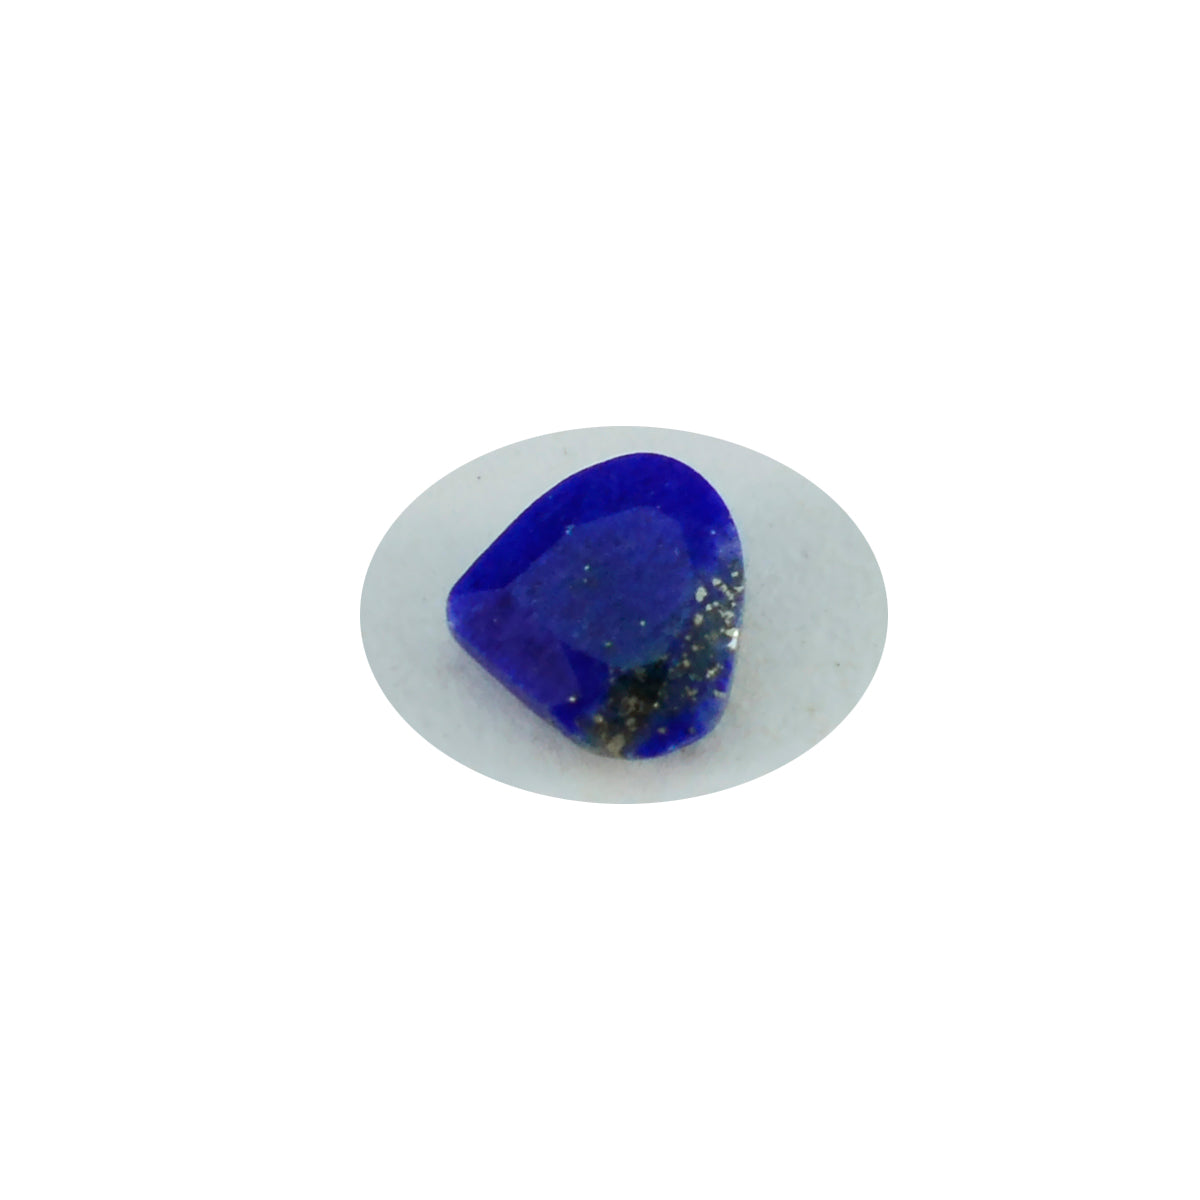 riyogems 1 st äkta blå lapis lazuli facetterad 8x8 mm hjärtform häpnadsväckande kvalitet lös sten